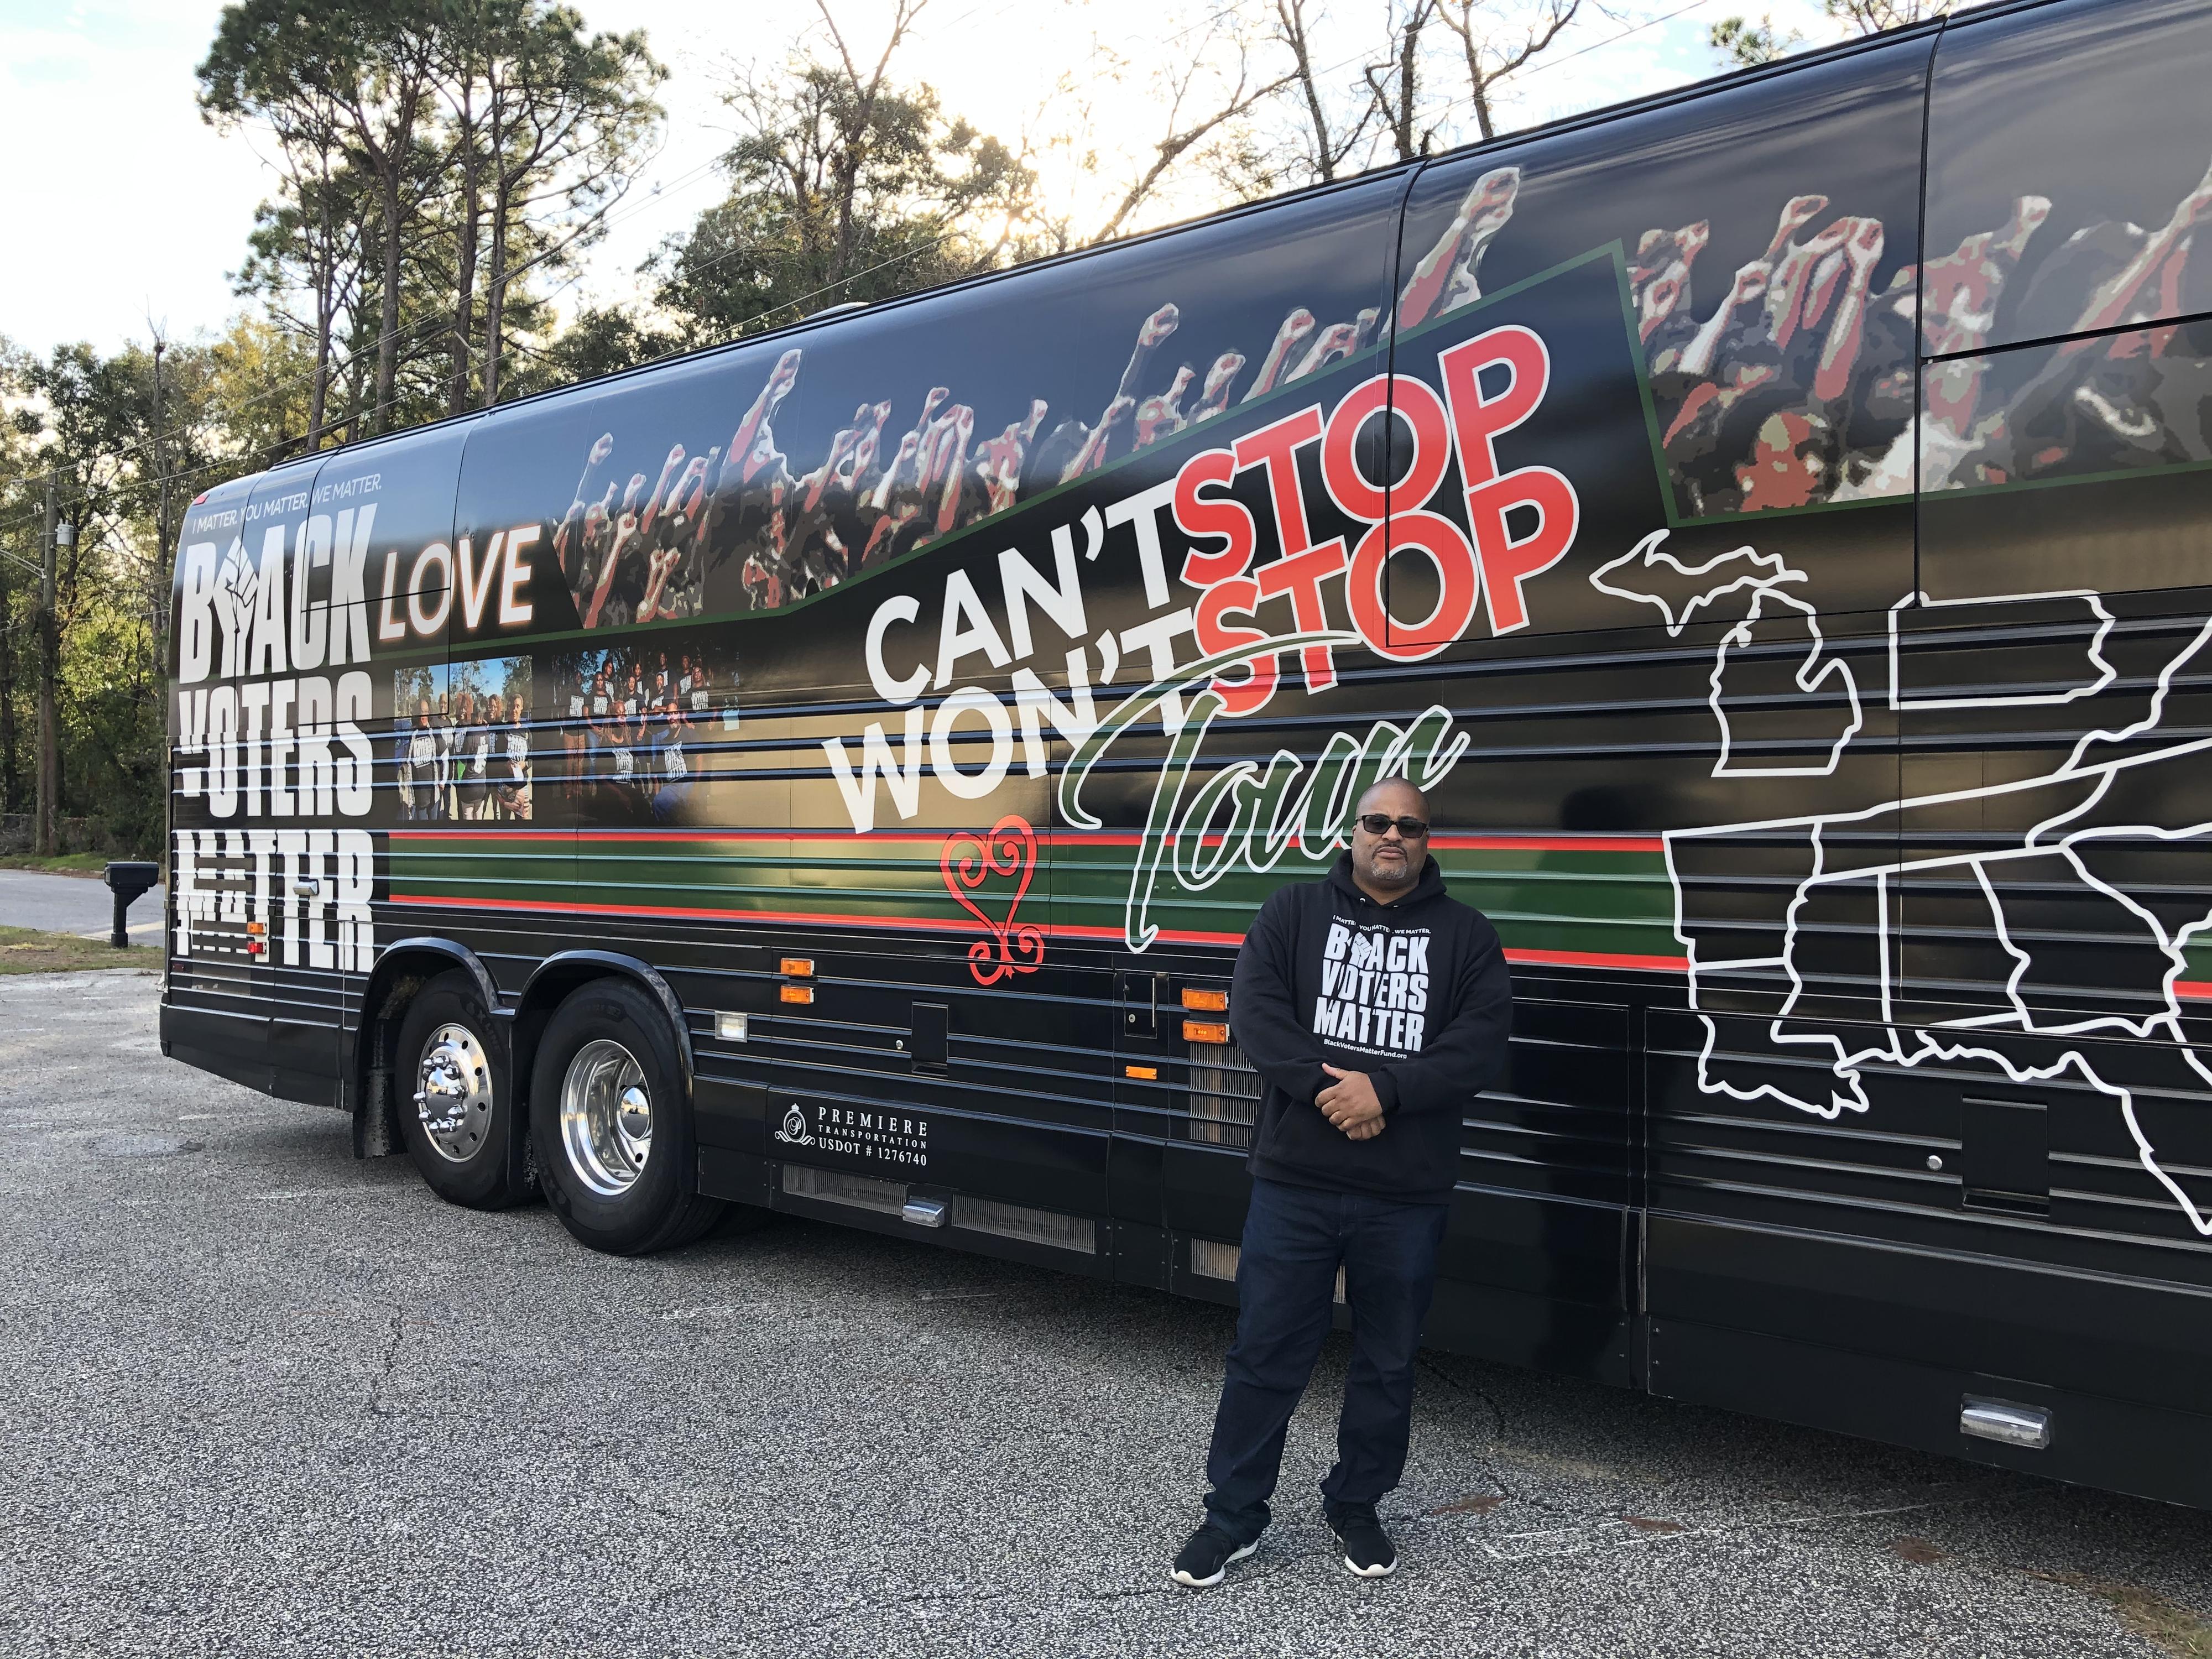 Cliff Albright, co-fondateur de l'organisation Black Voters Matter, devant le bus de campagne. [RTS - Raphaël Grand]